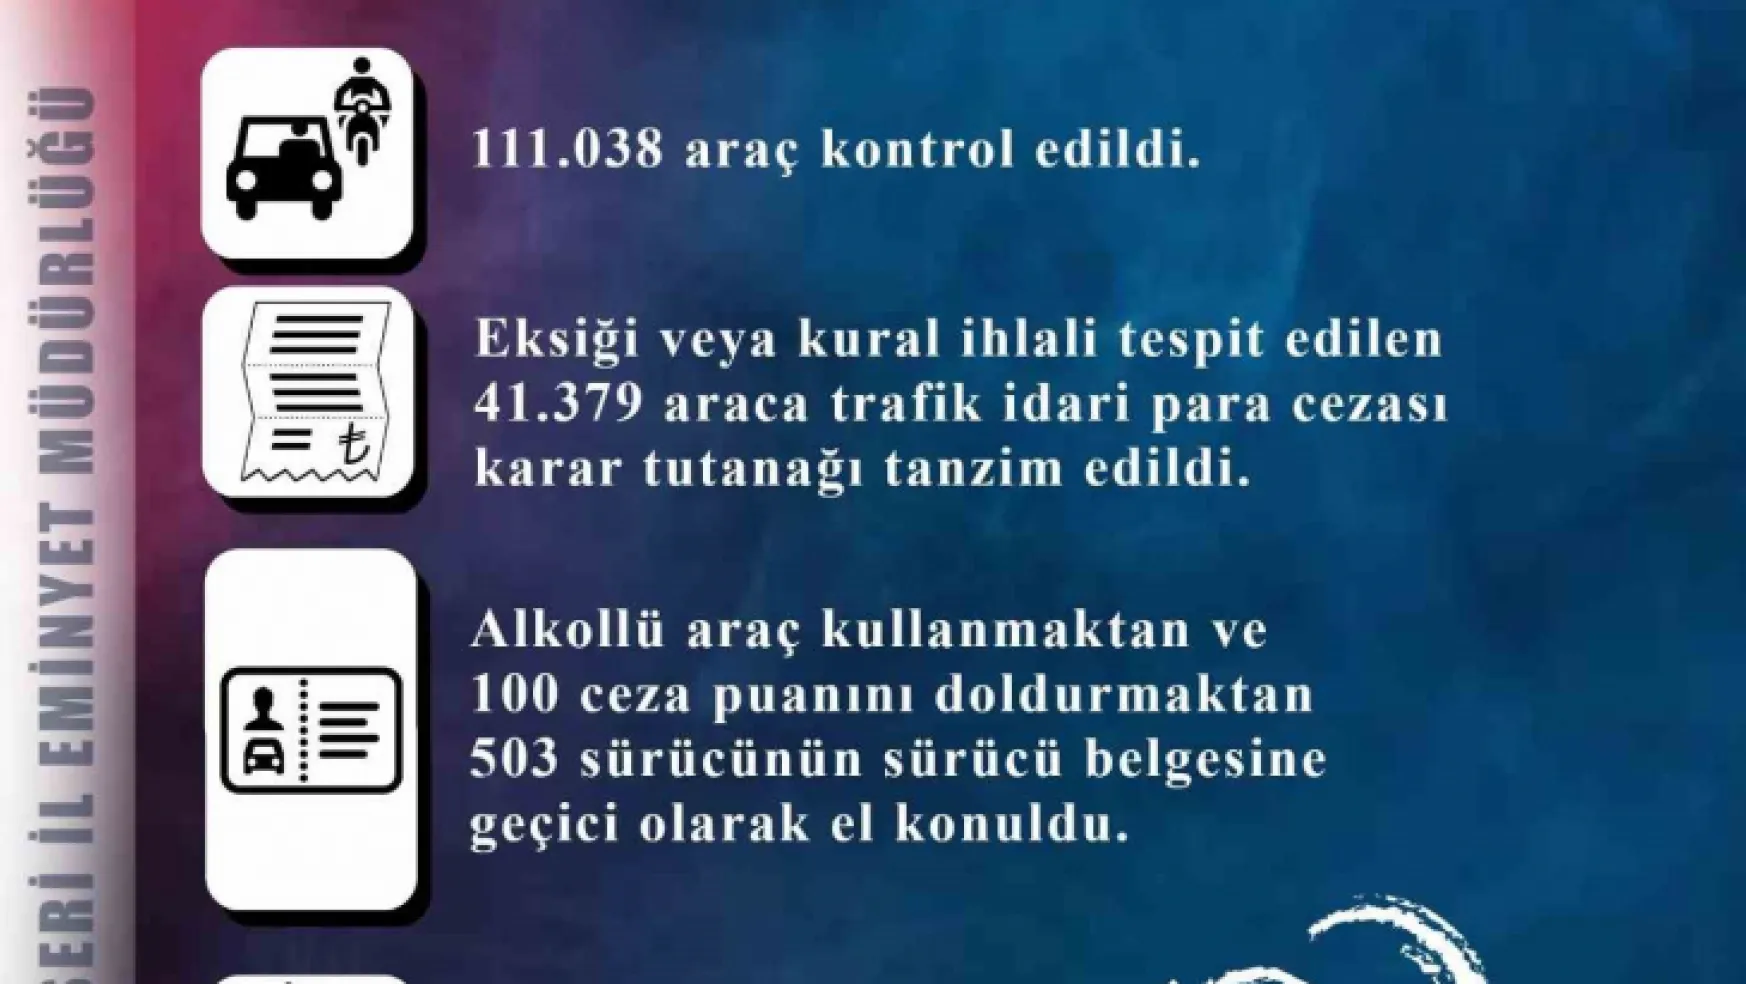 Kayseri'de 959 araç trafikten men edildi